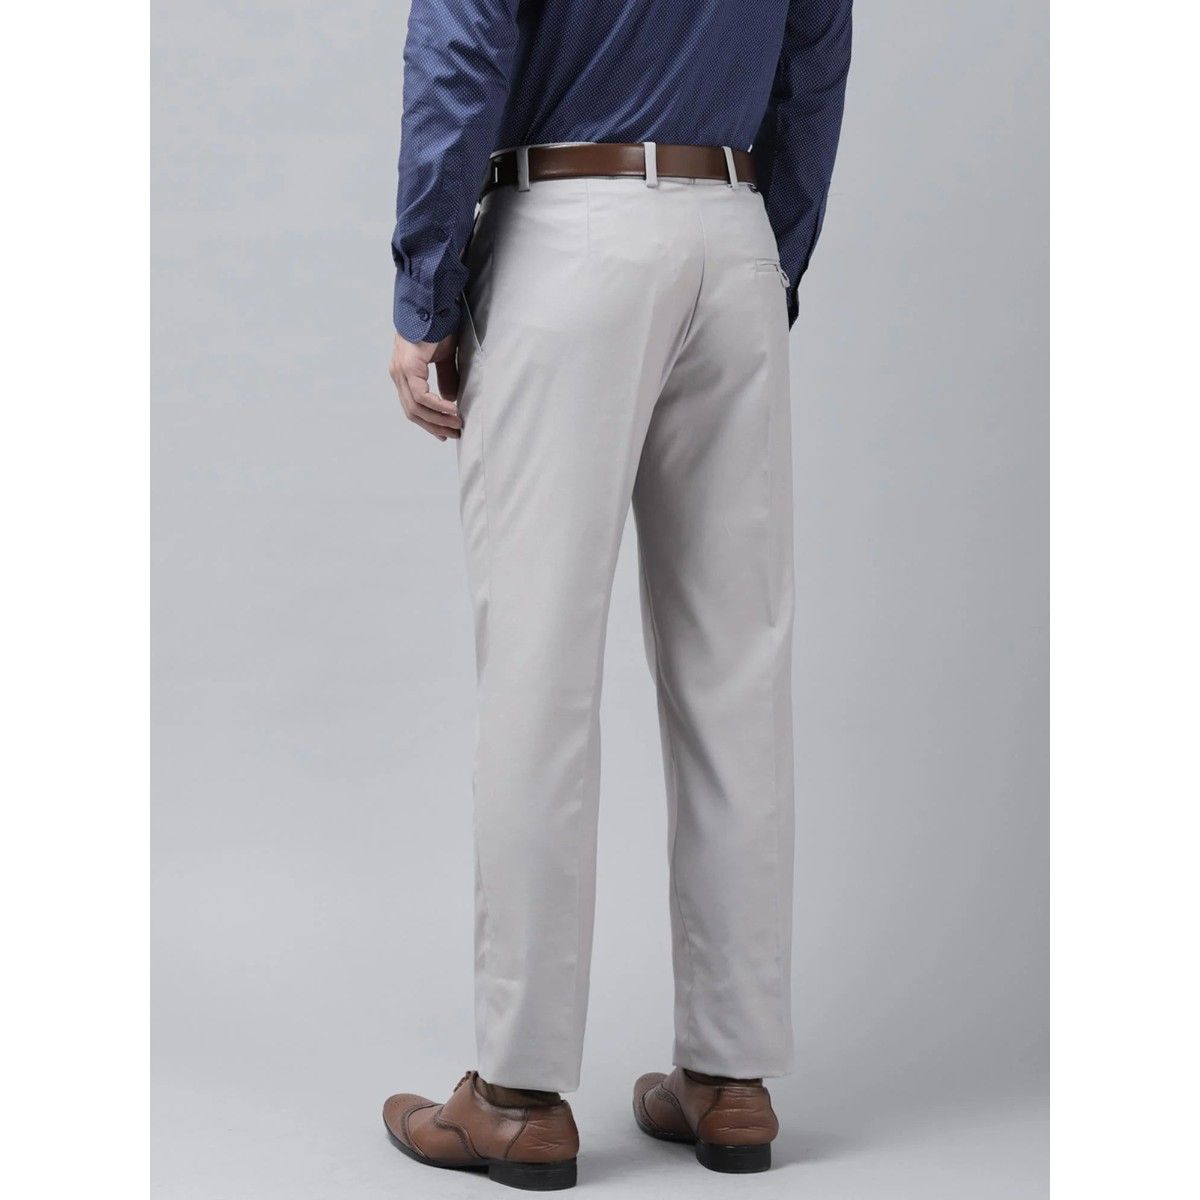 Grant Slim Fir Grey Lycra Trouser | Grey pants, Slim fit pants men, Slim fit